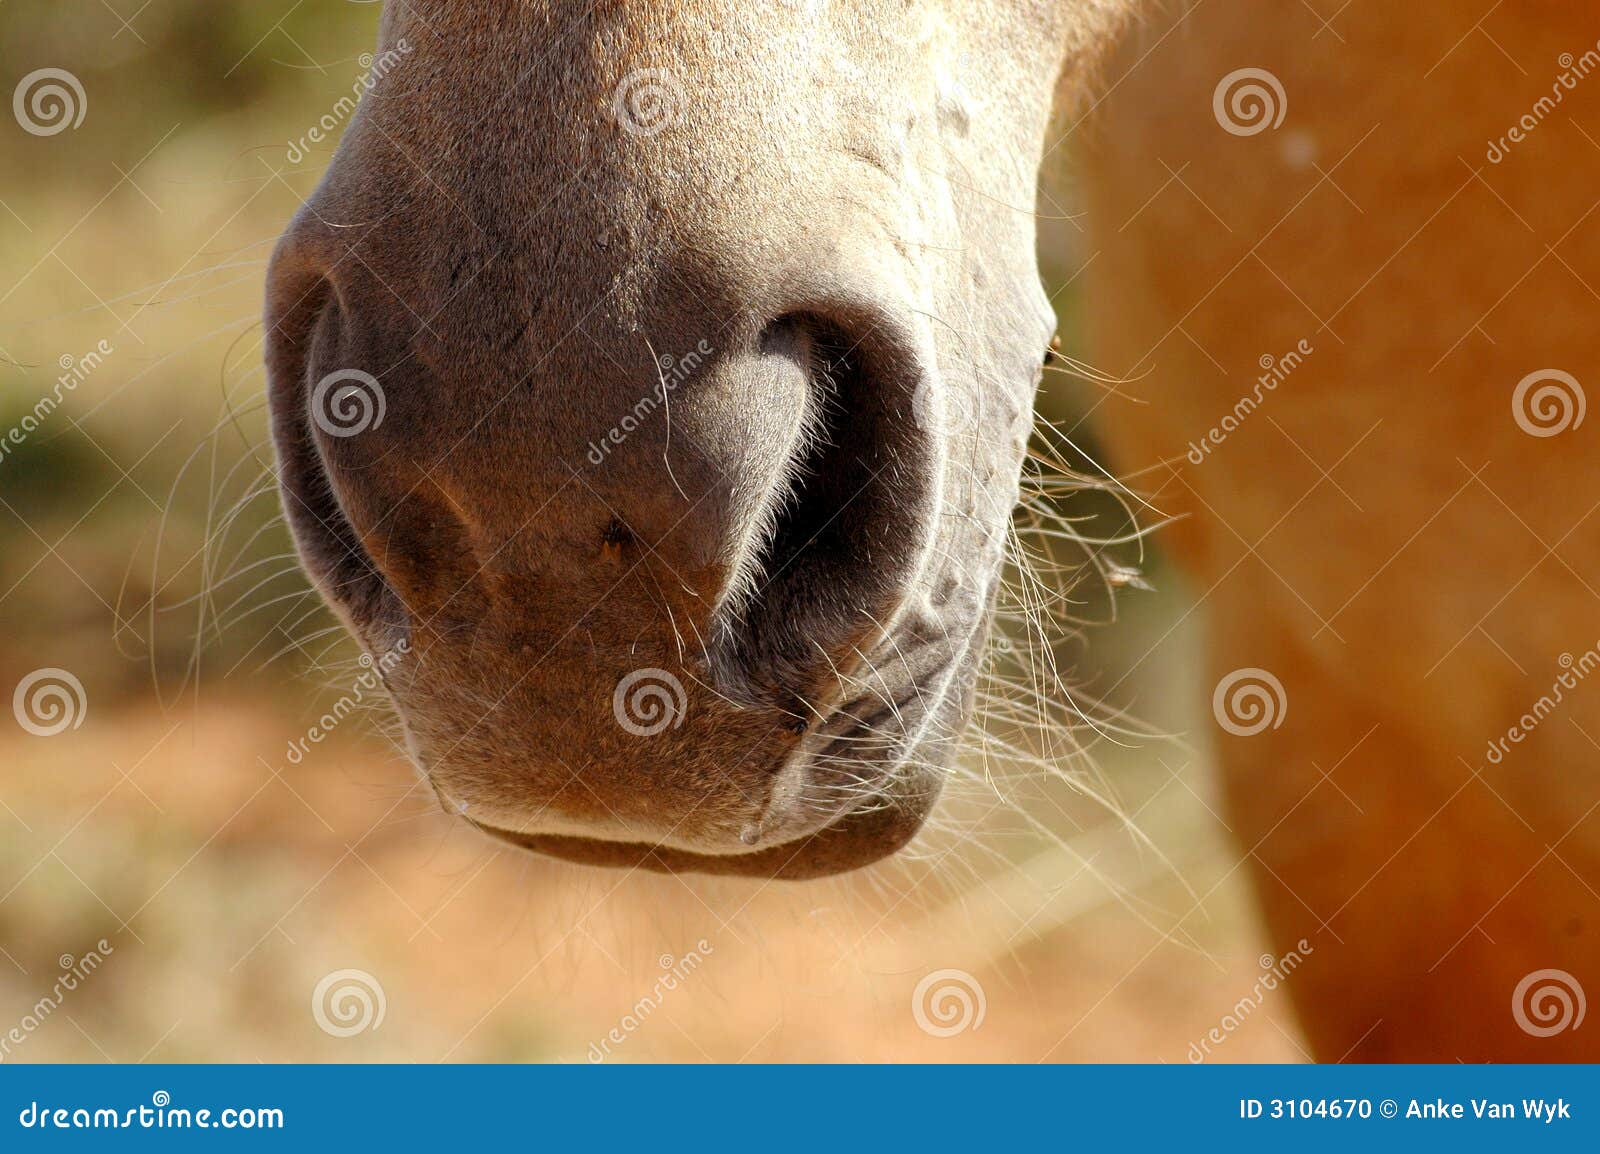 horse's nostrils